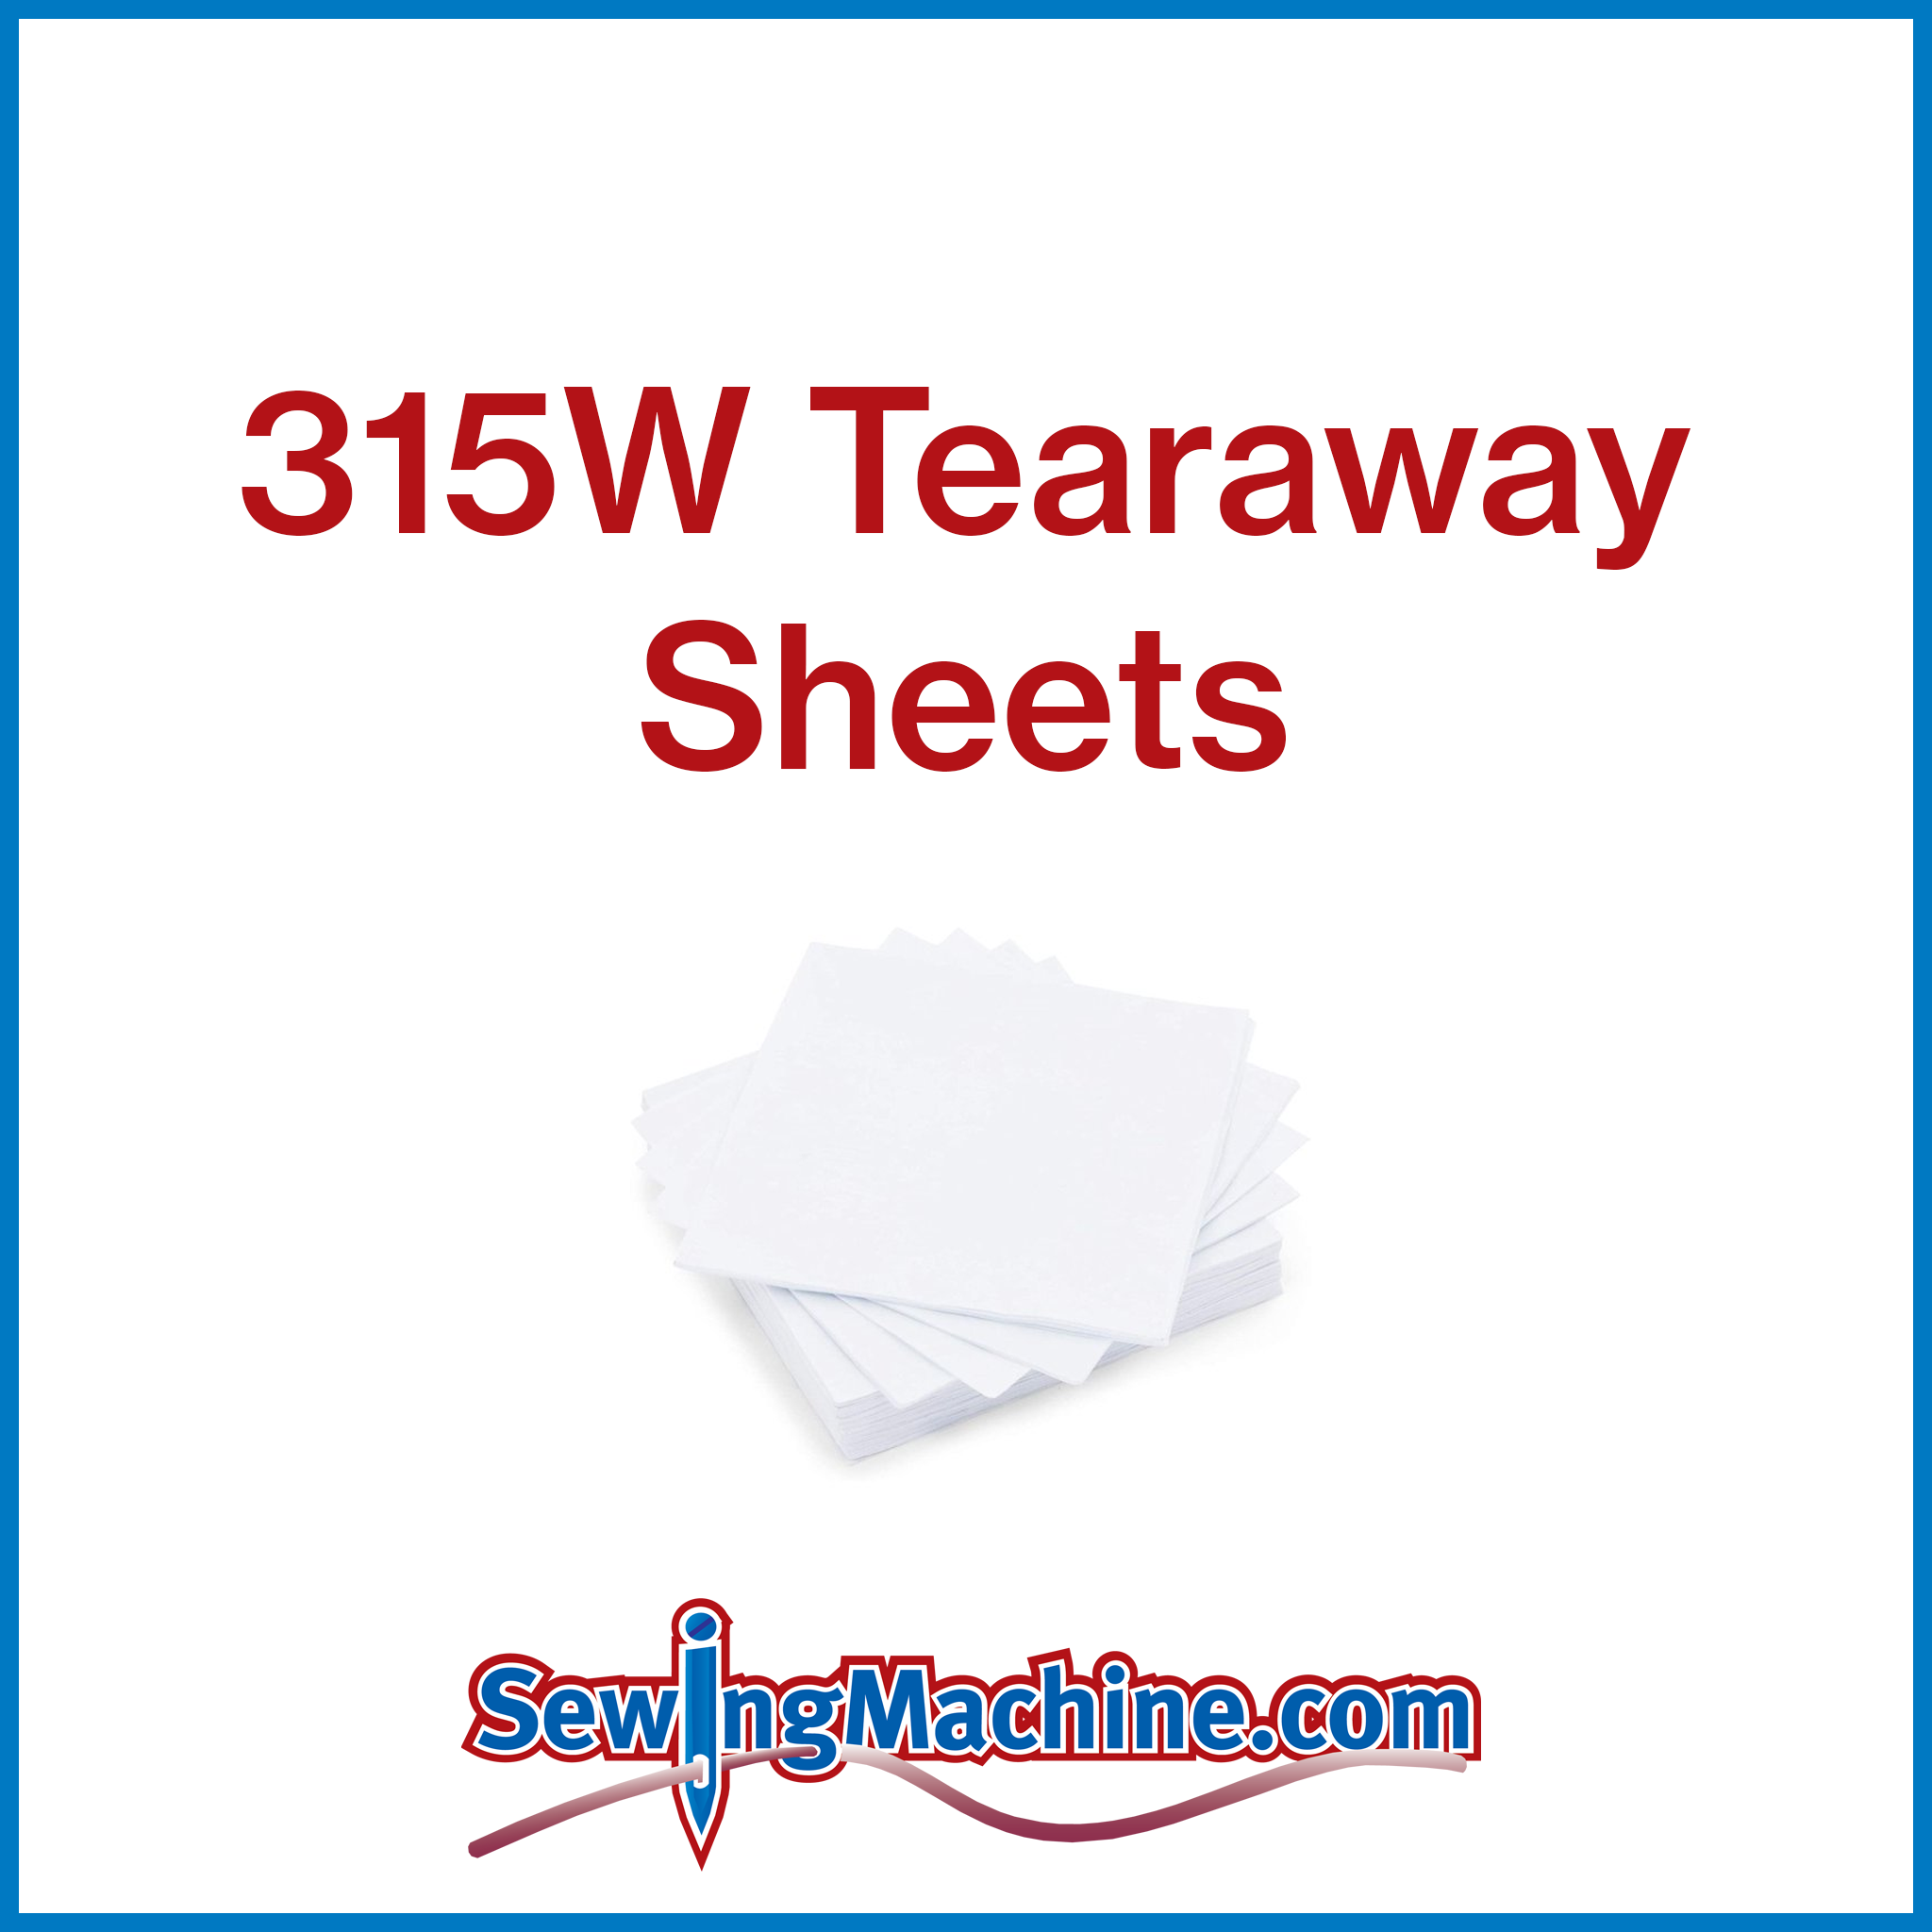 315W Tearaway Sheets